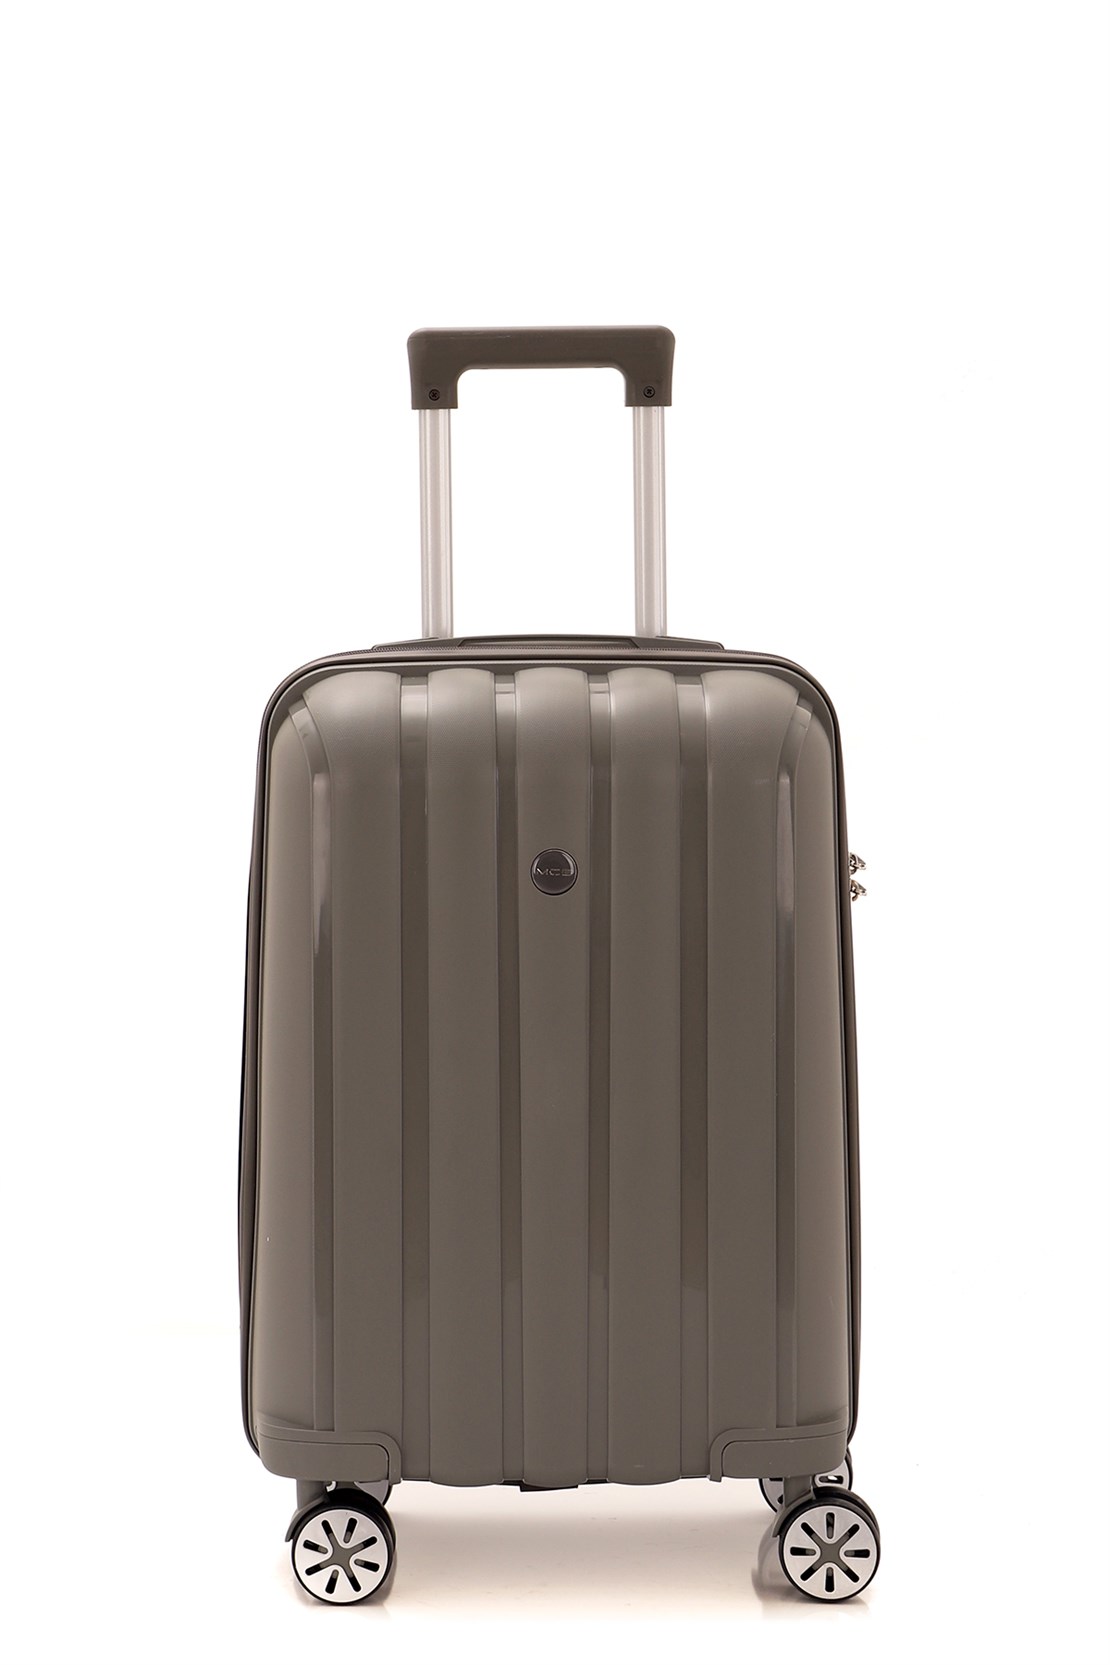 Маленький чемодан для ручьной клади из полипропилена MCS V305 S GREY! Для 8-10 кг! - 3